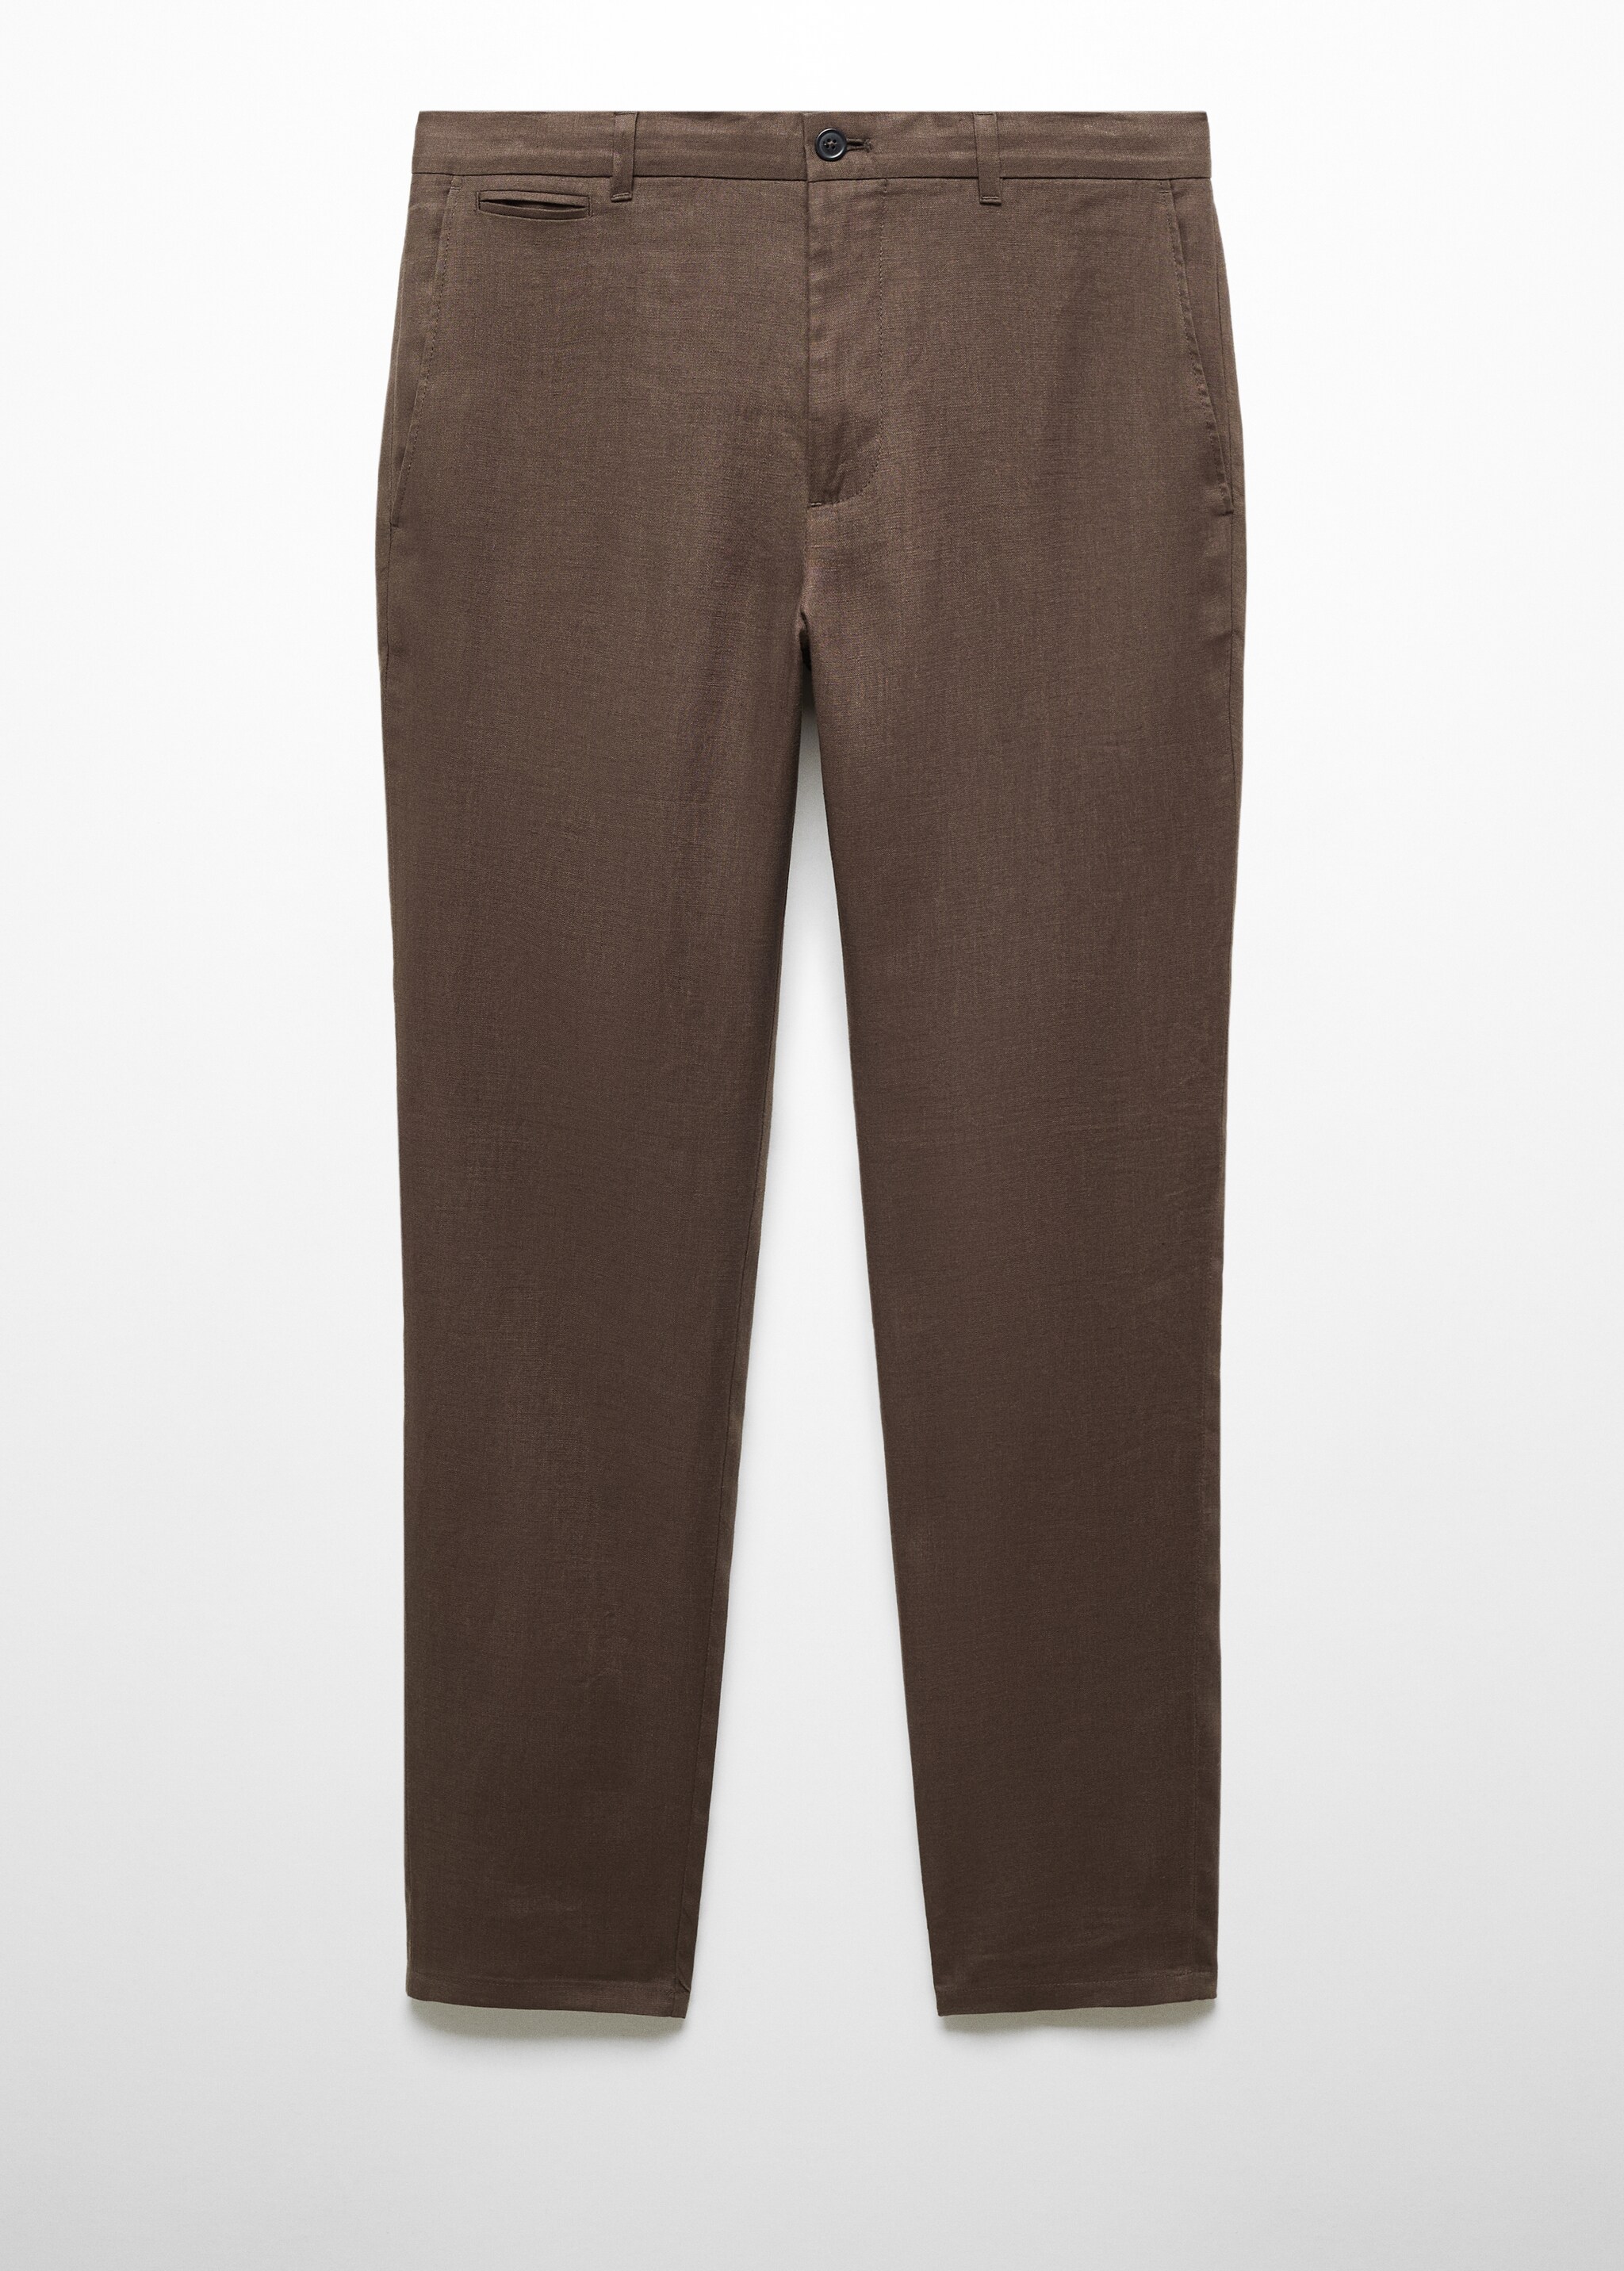 Pantaloni 100% lino slim fit - Articolo senza modello